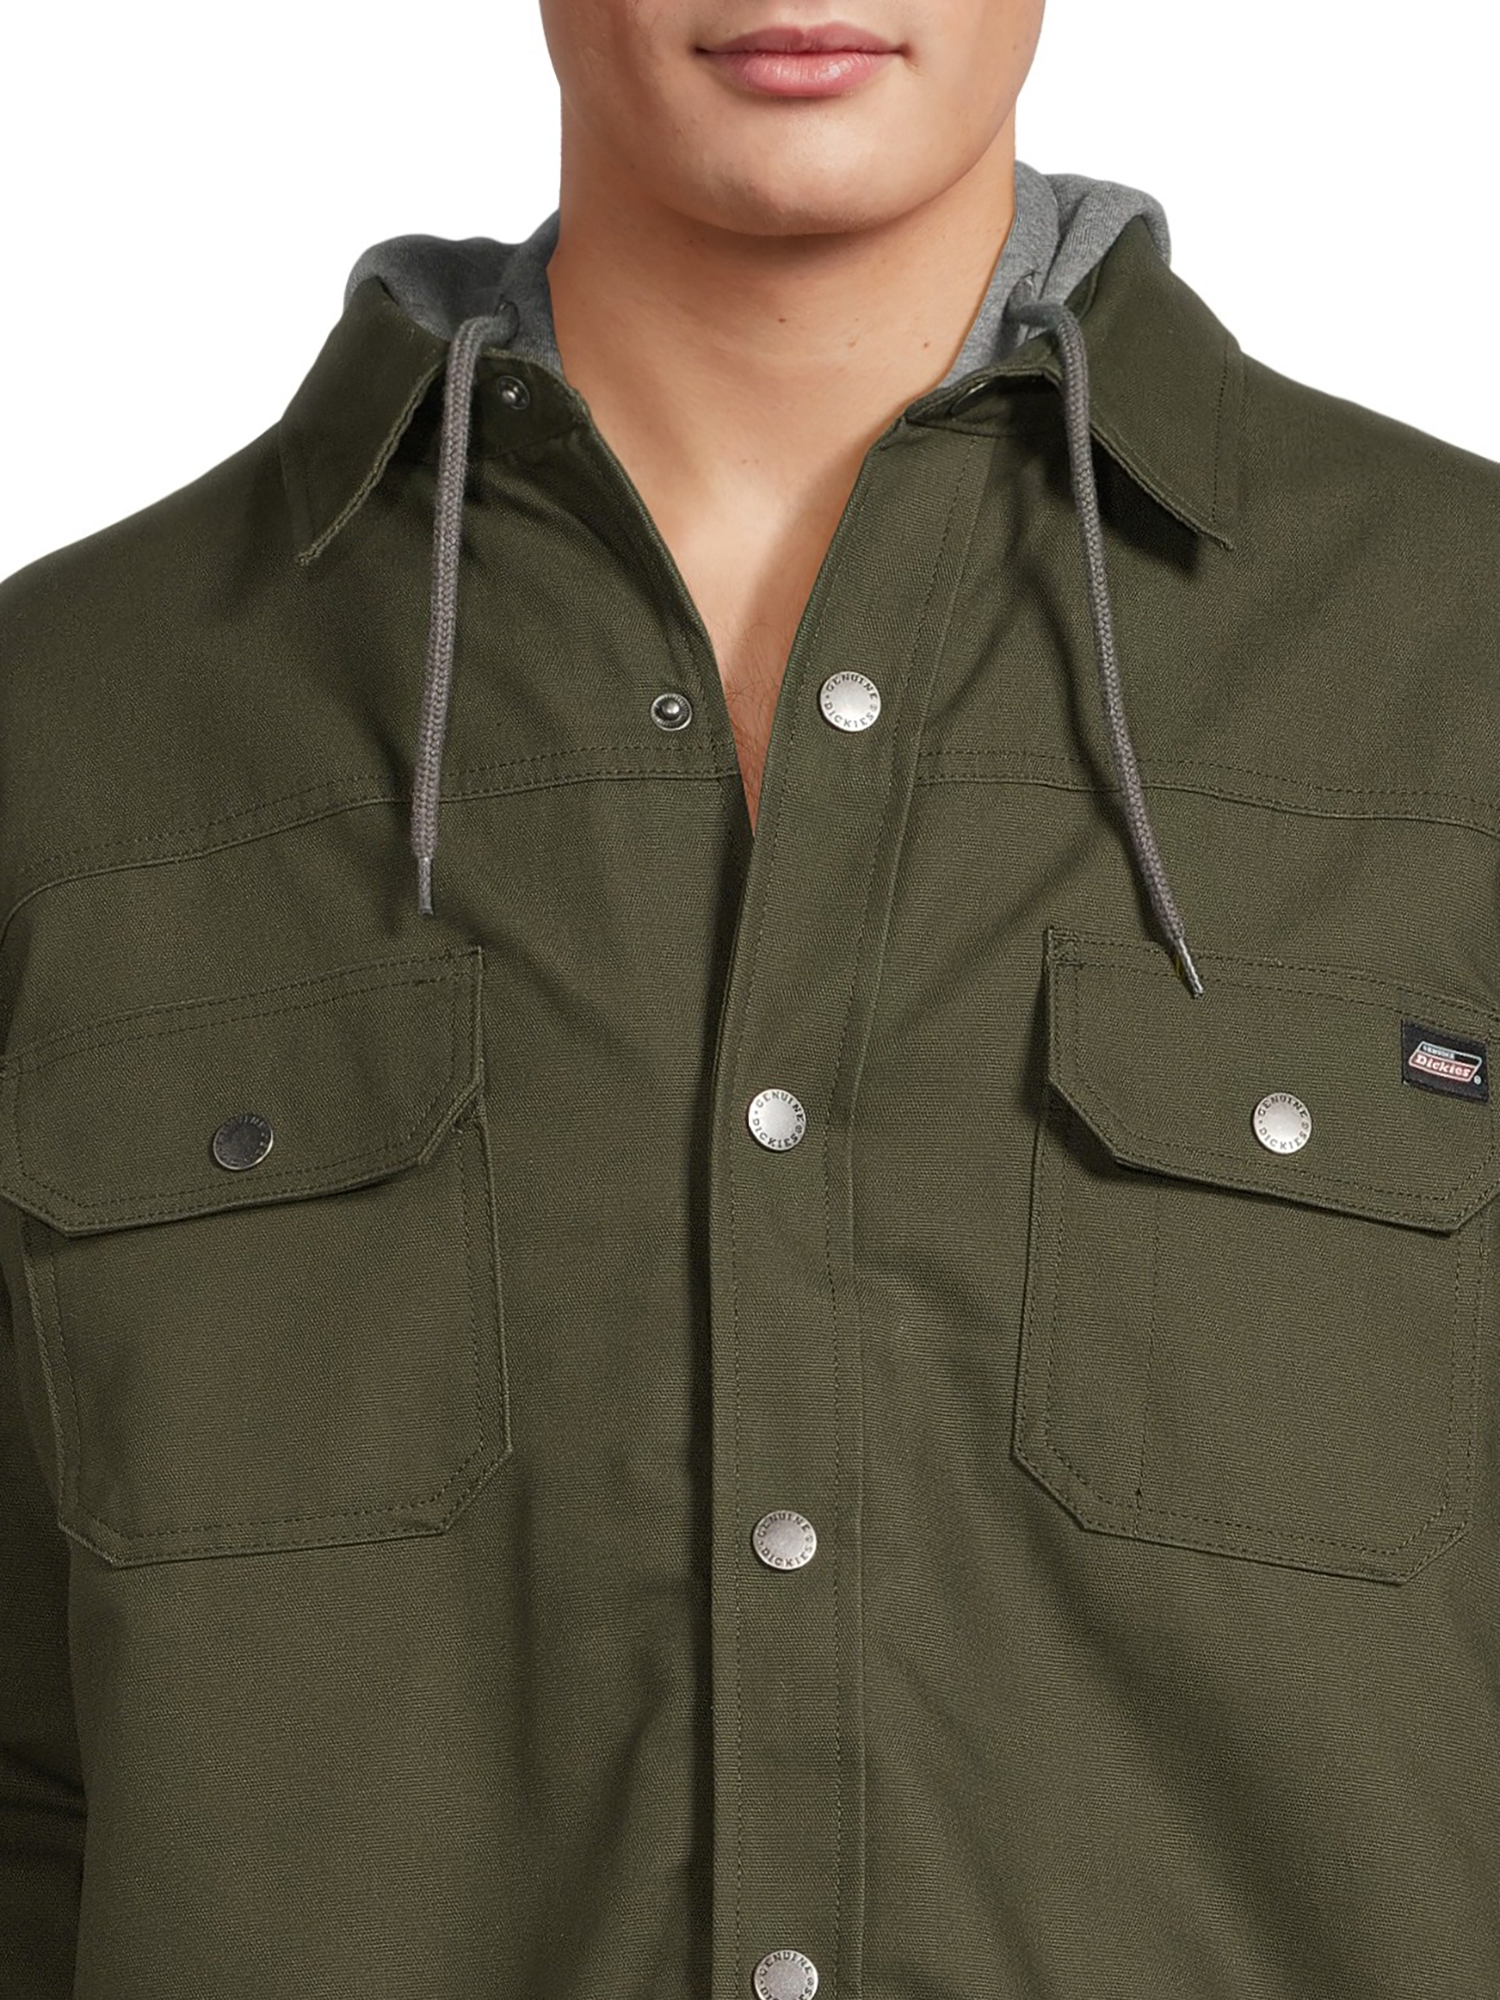 Genuine Dickies Men's Canvas Hooded Shirt Jacket - image 5 of 5